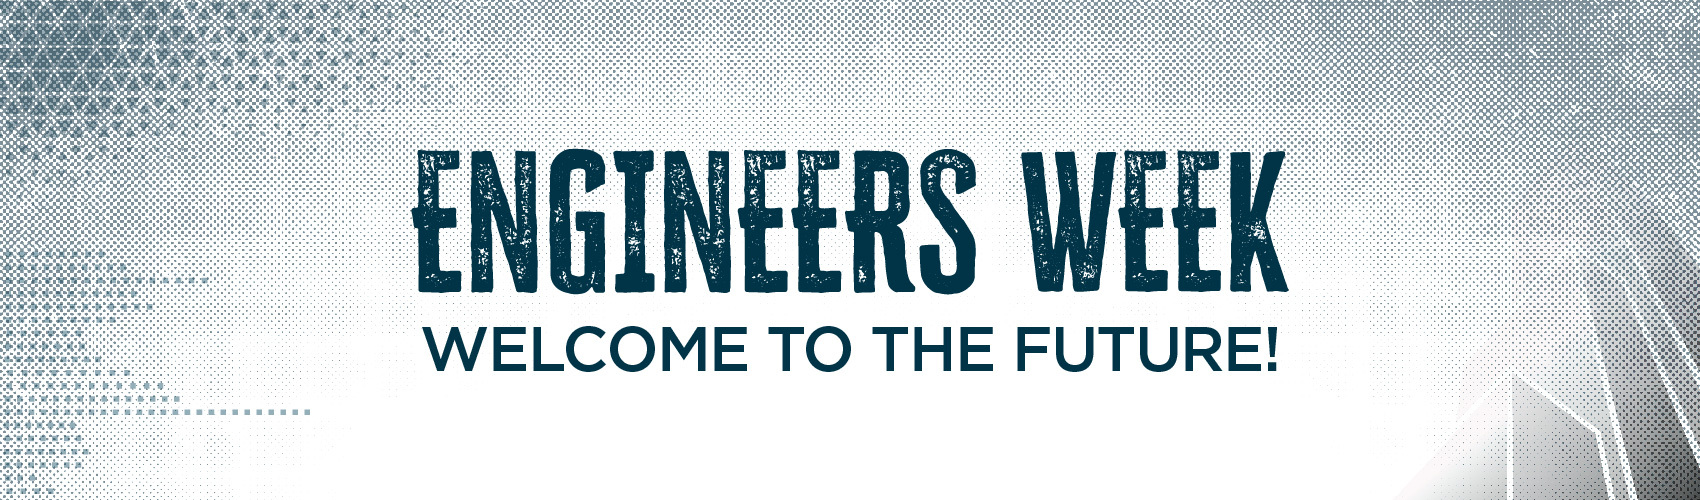 Engineers Week Creating the Future Banner Desktop